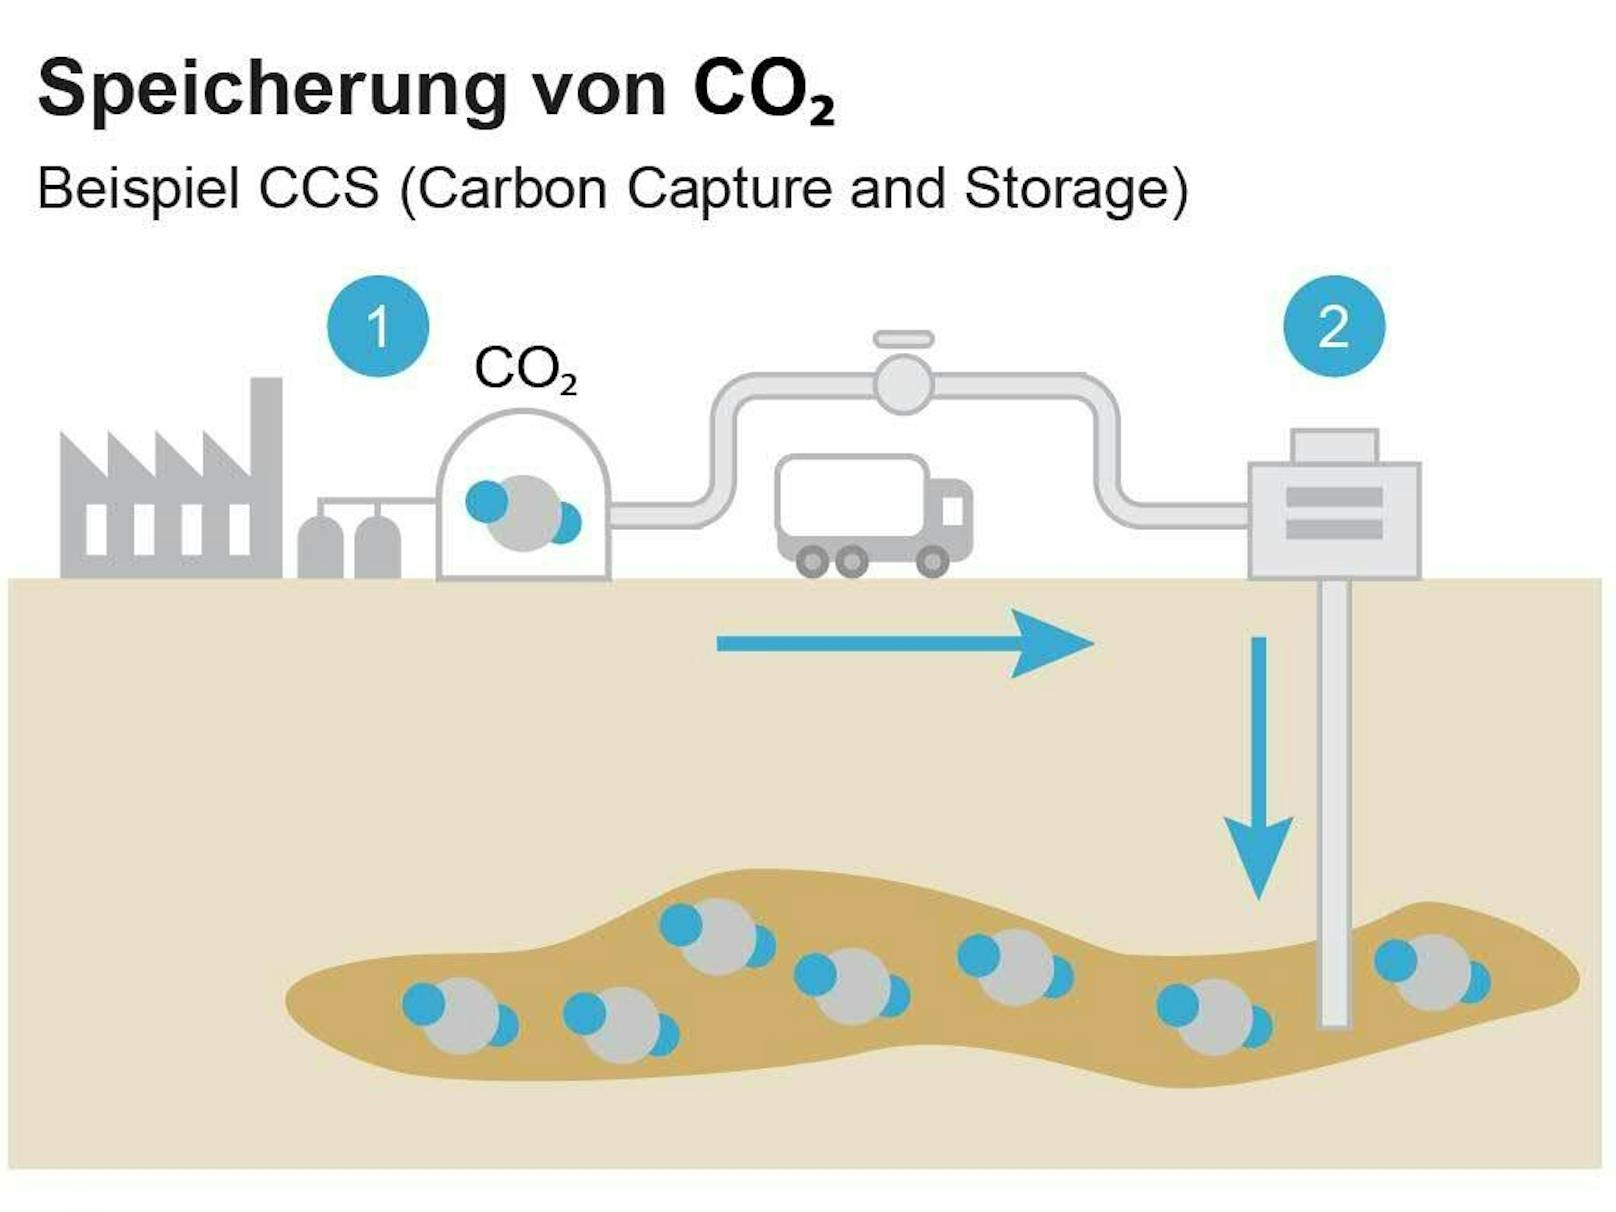 Schematische Darstellung von CCS (Carbon Capture and Storage): 1) CO2 wird bei Industrieproduktionen abgeschieden bzw. aus der Luft gefiltern und 2) in z.B. ehemalige Erdgaslagerstätten gepumpt und dauerhaft gespeichert.